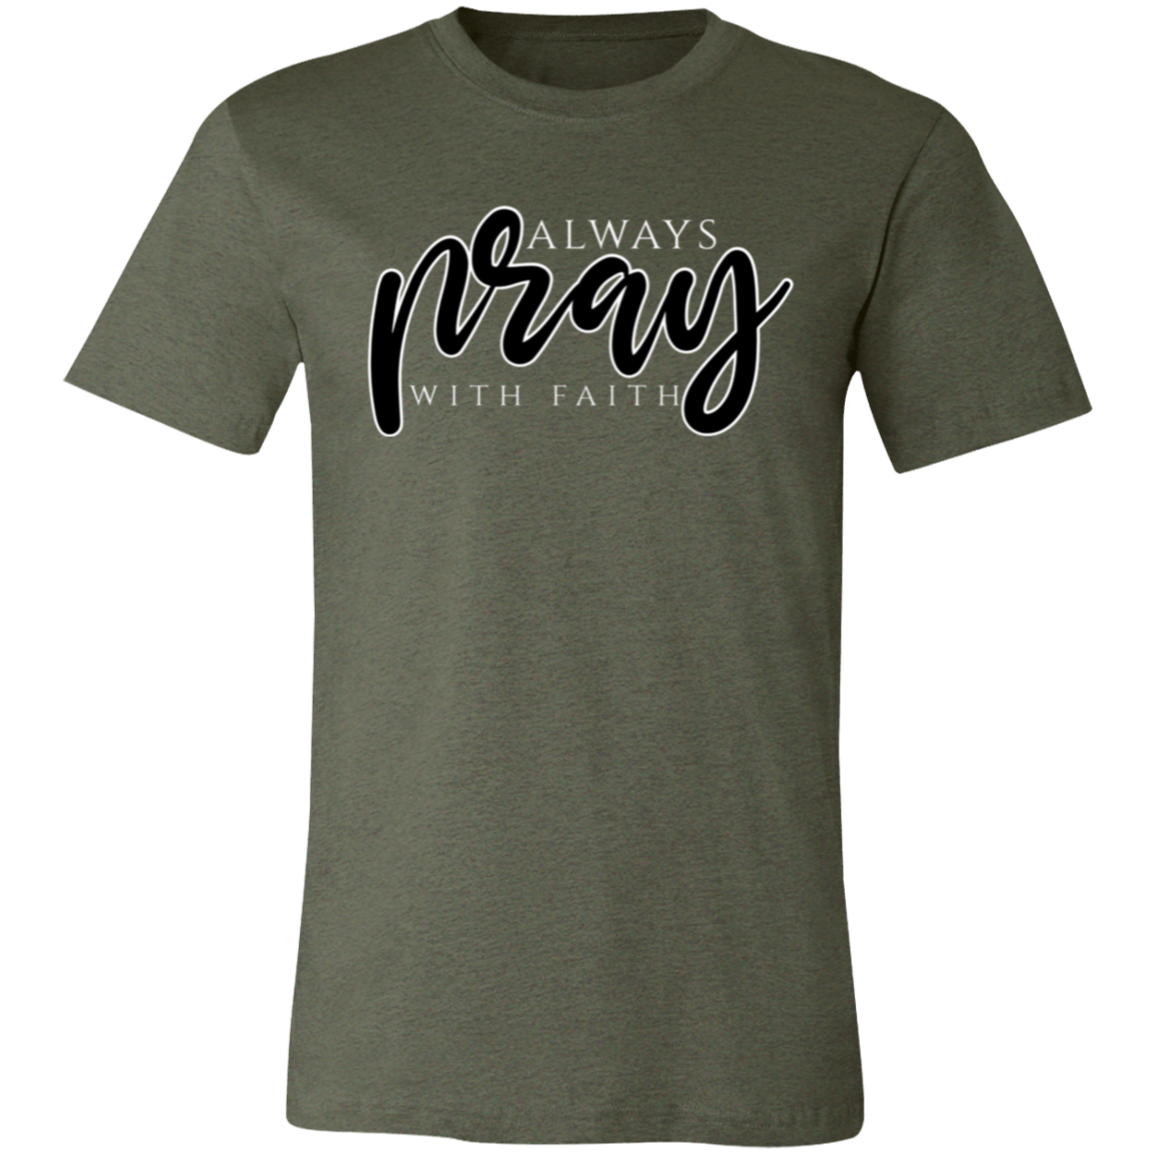 Pray with Faith Unisex Shirt